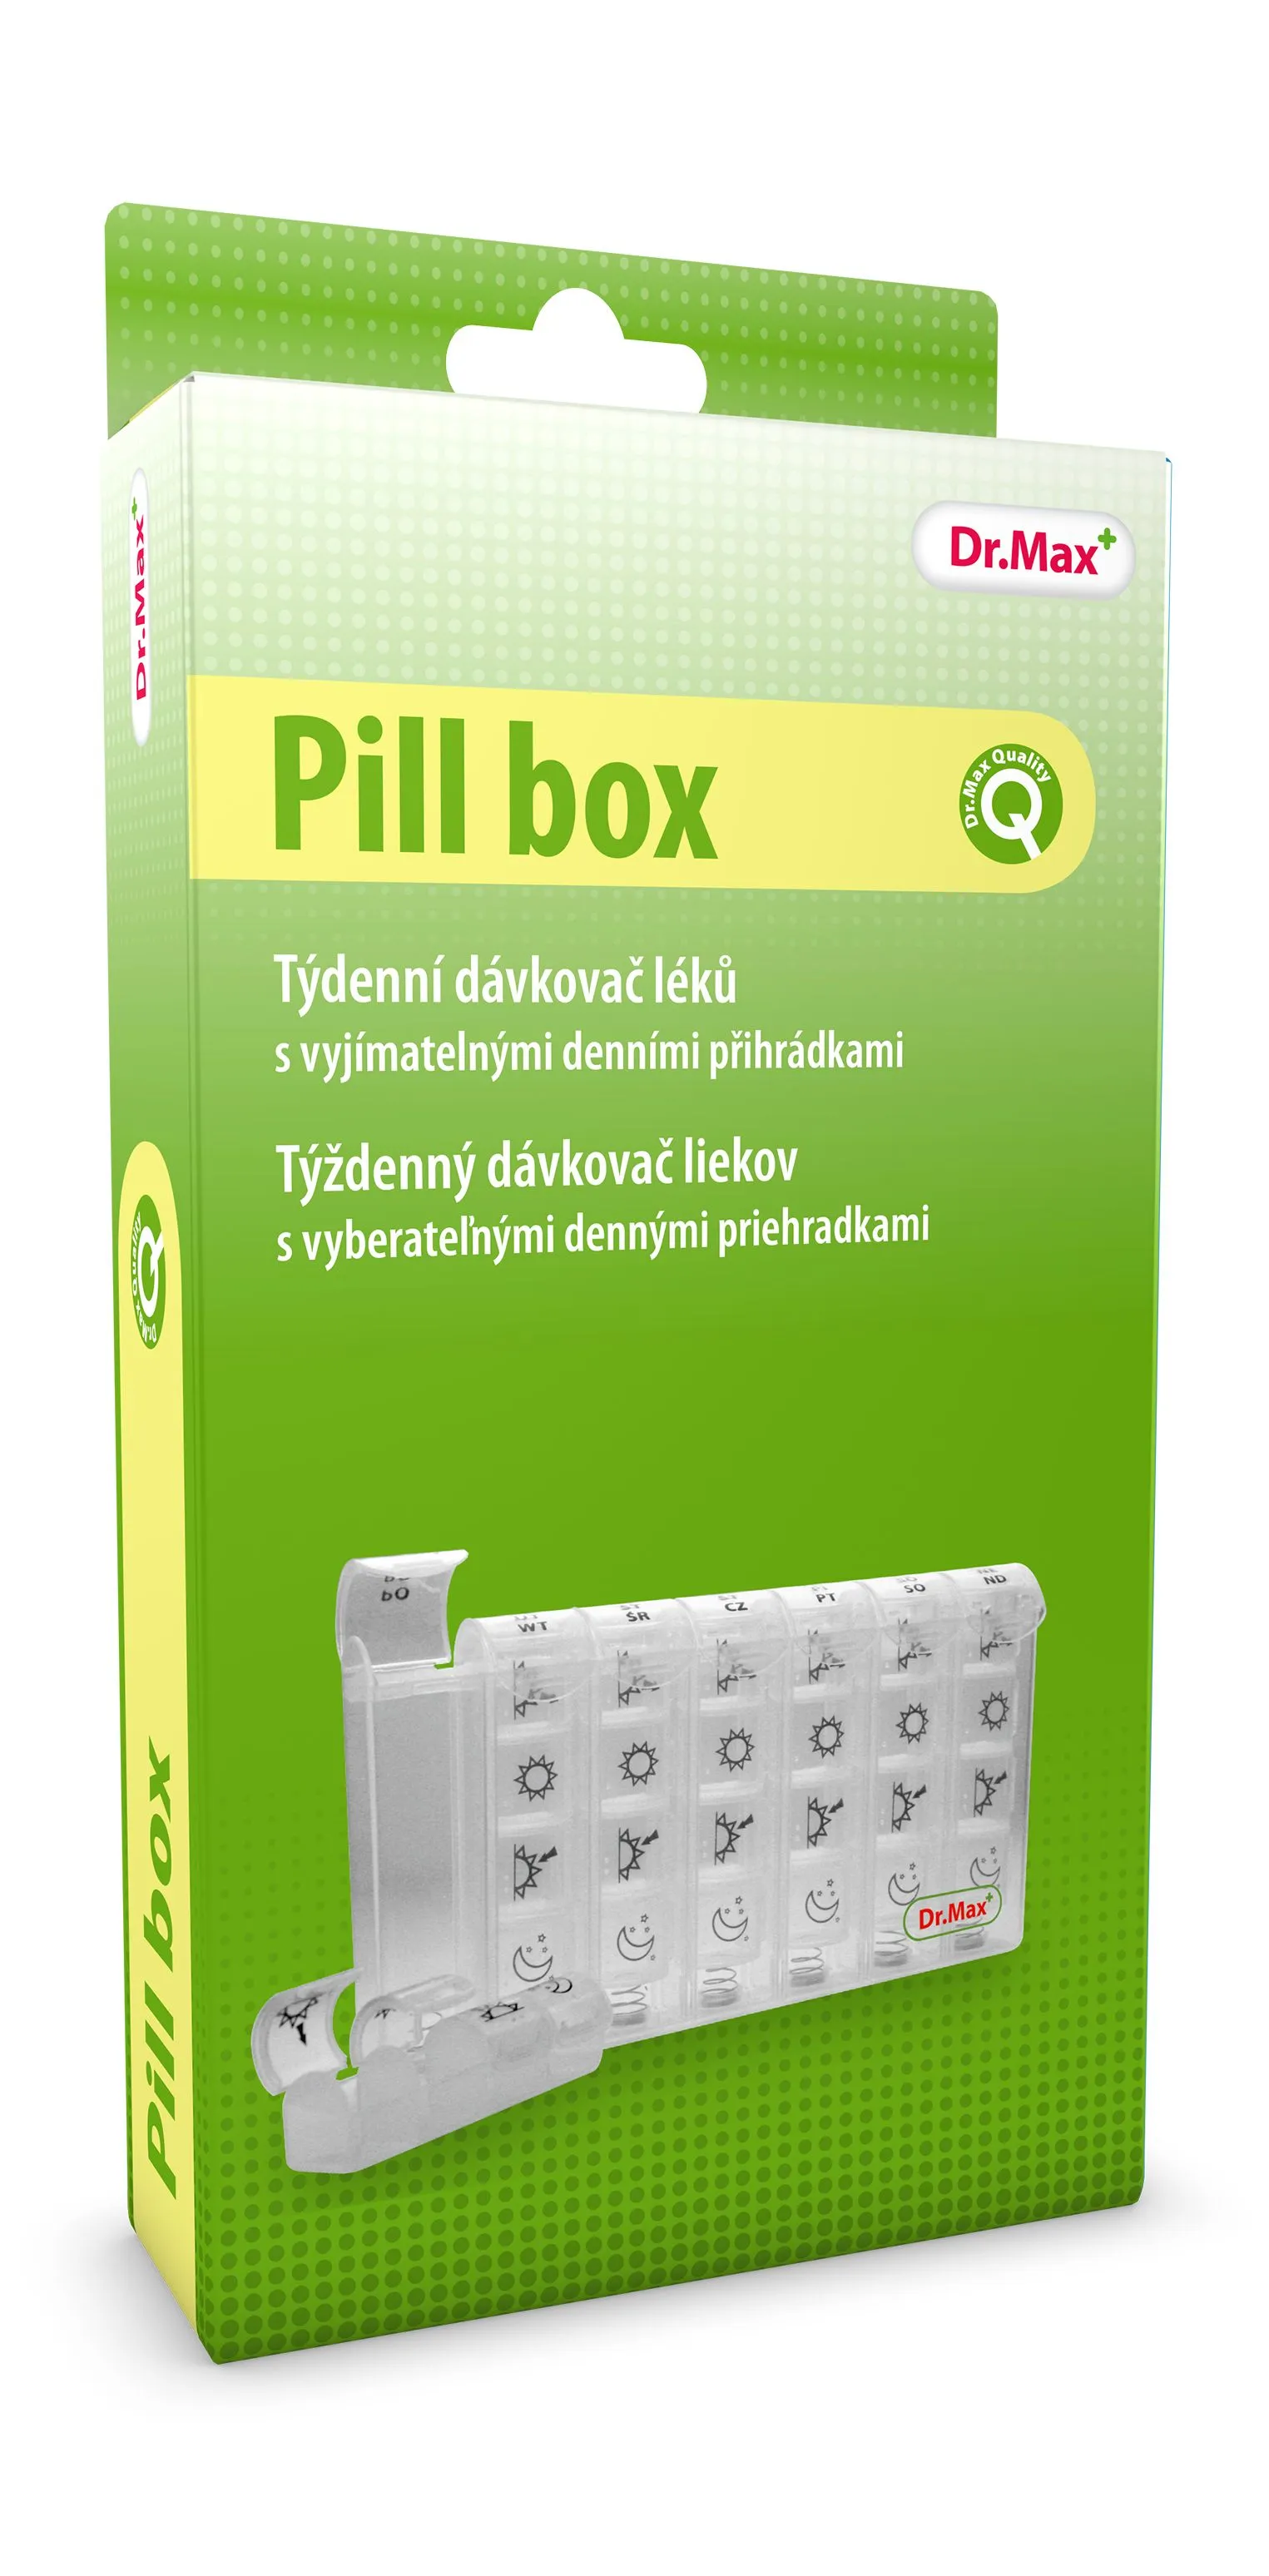 Dr. Max Pill box týdenní dávkovač léků